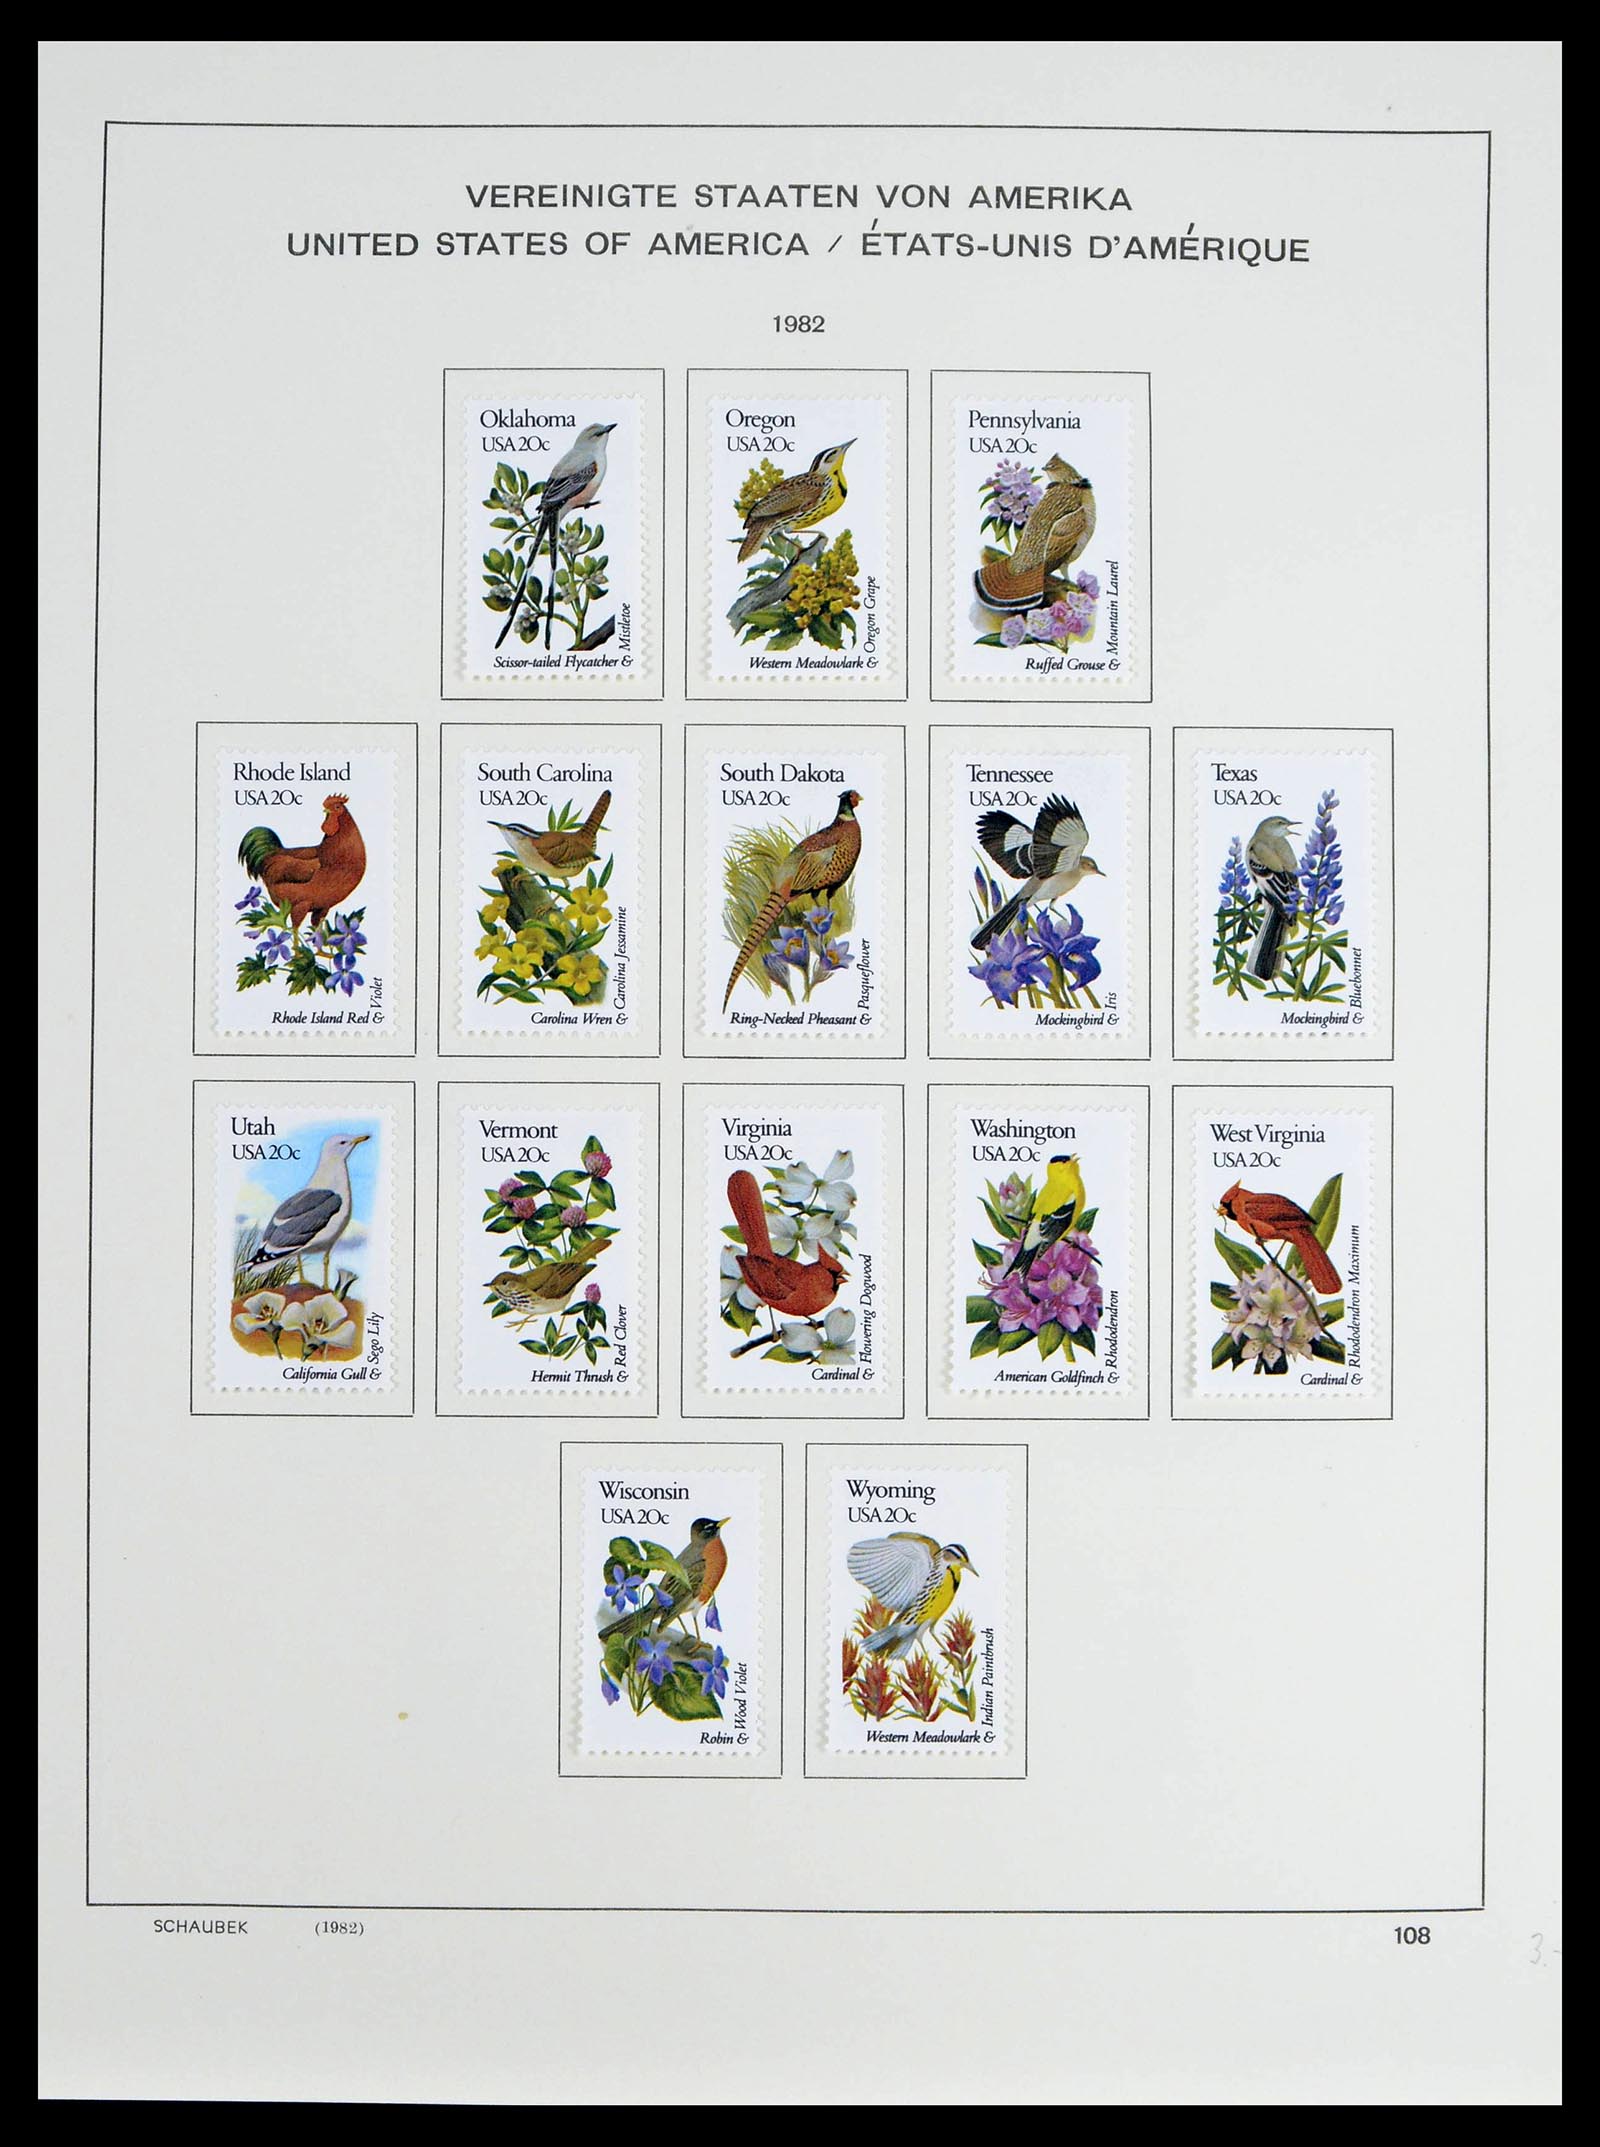 39368 0052 - Stamp collection 39368 USA 1972-2004.